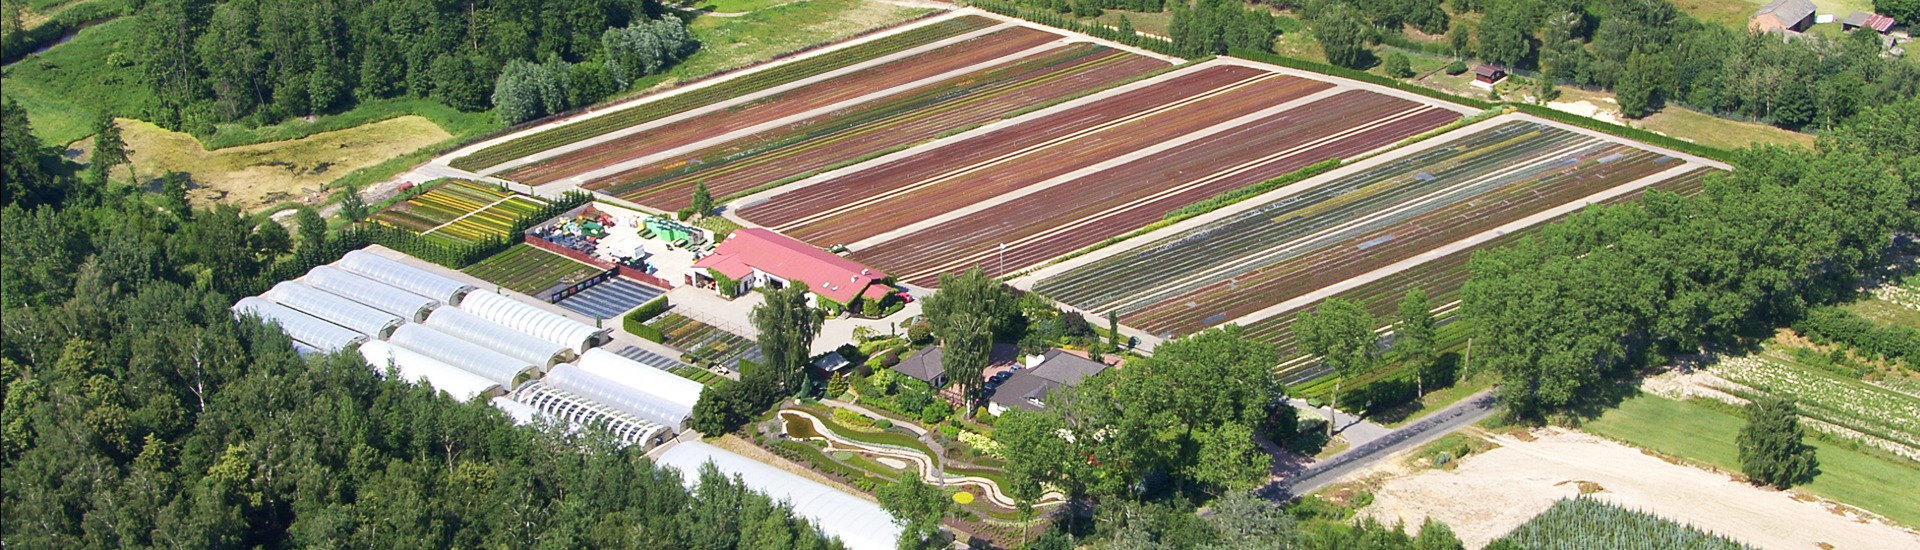 Gärtnerei für Heidepflanzen, Produzent von Setzlingen von Heidepflanzen und japanischen Azaleen - Polen